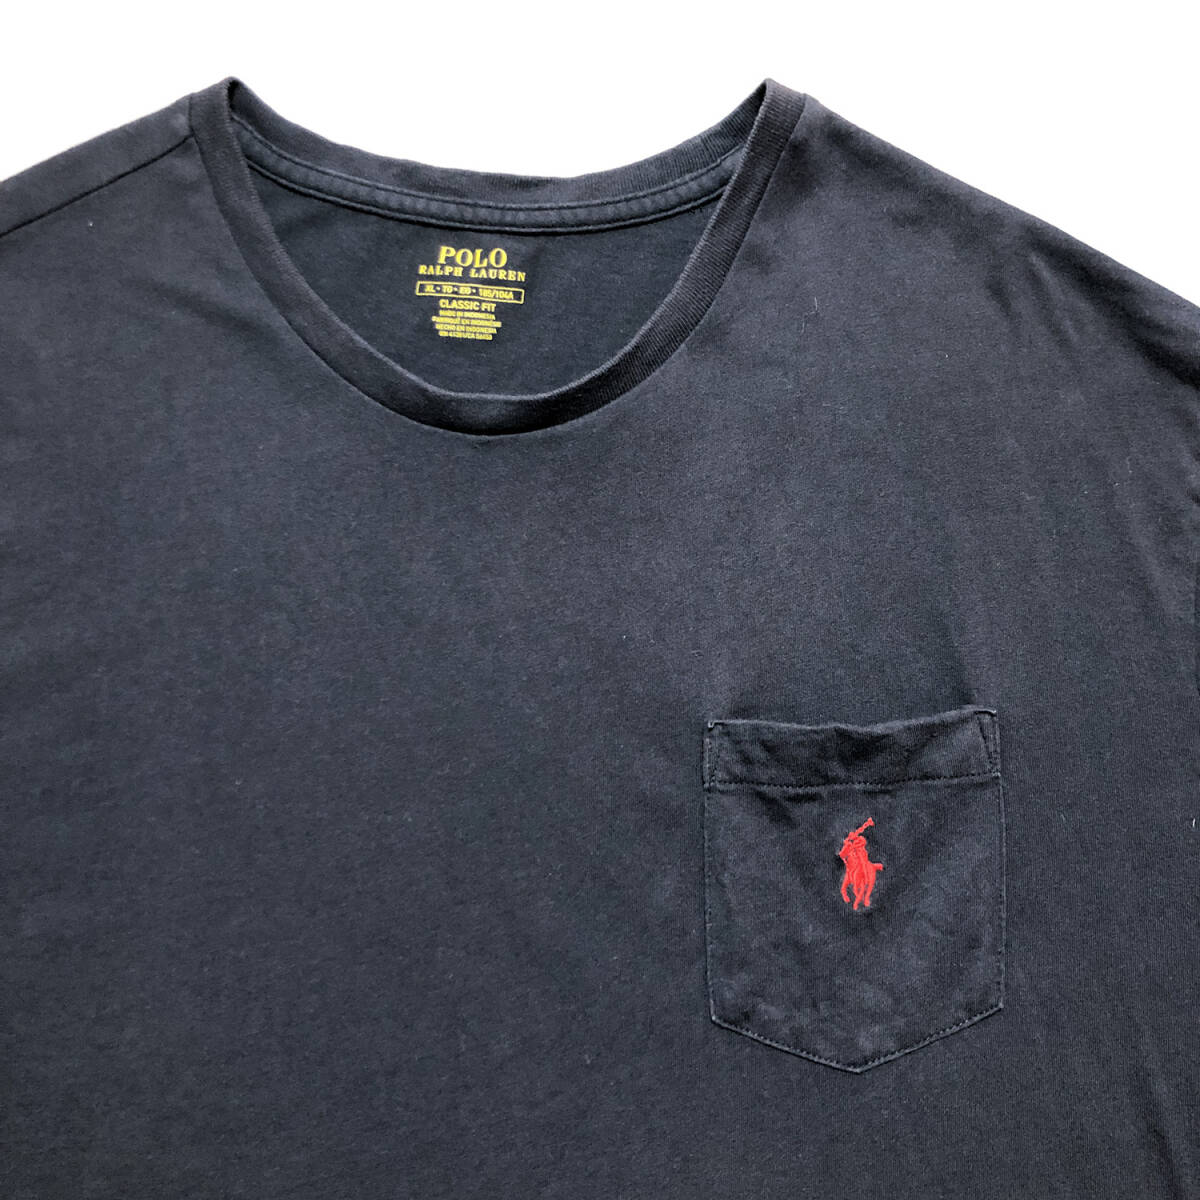 USA 古着 半袖 Tシャツ ポケT ポロラルフローレン Polo Ralph Lauren ロゴ ネイビー ワンポイント メンズXL BA2462